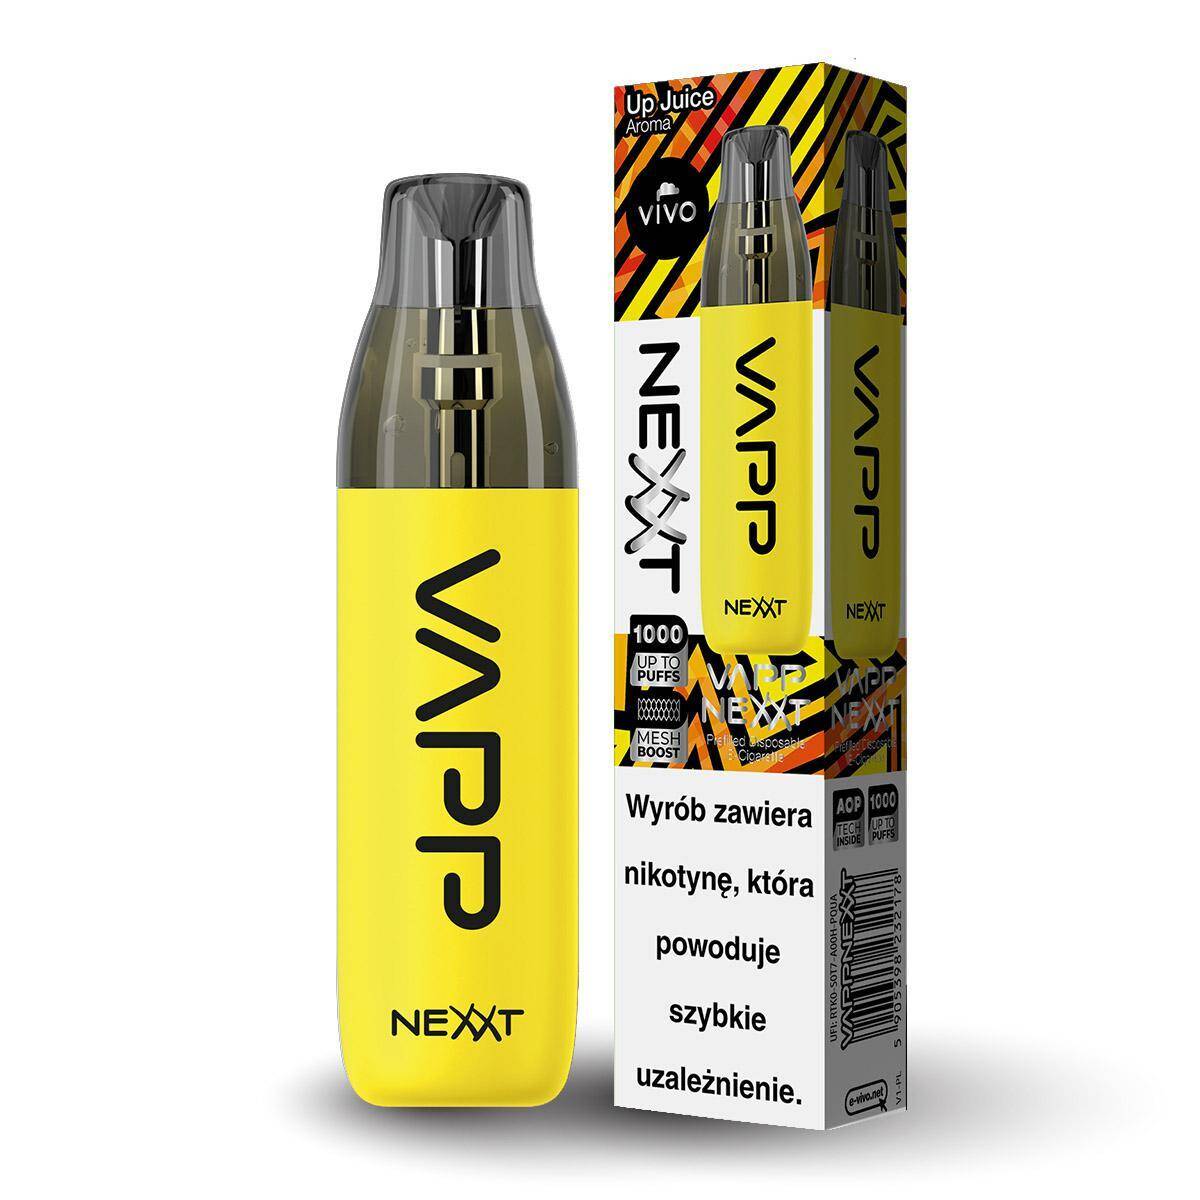 E-papieros VIVO Nexxt - Up Juice 20mg